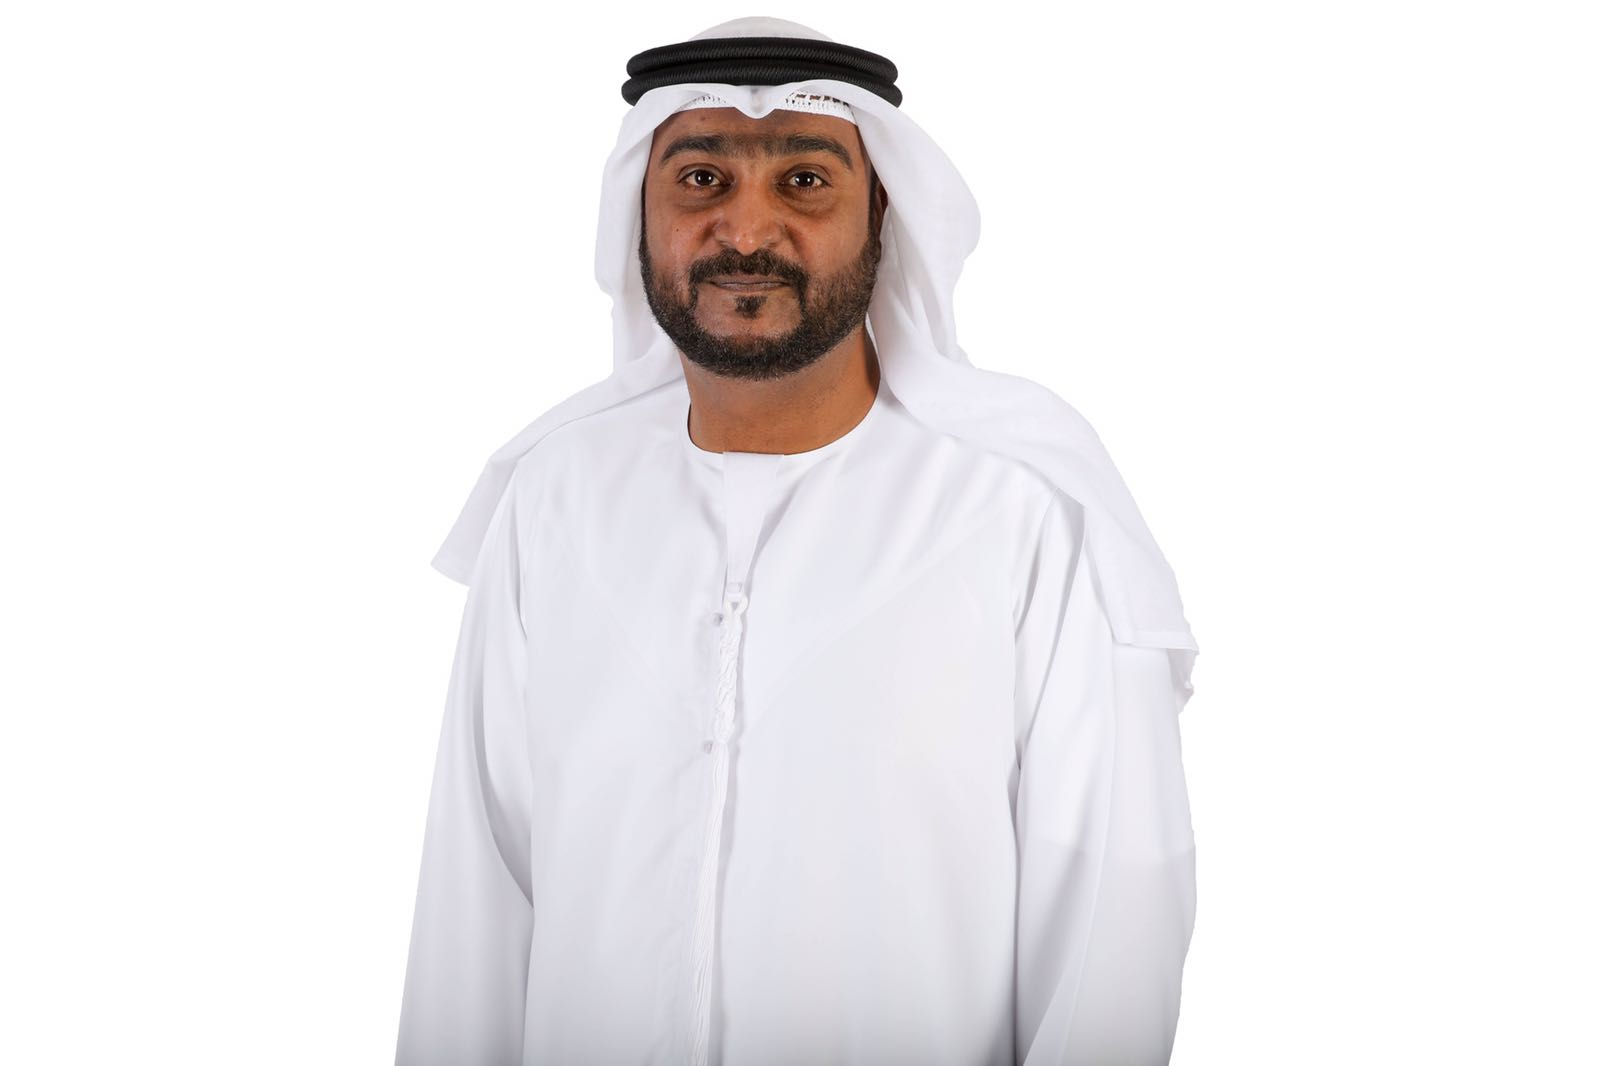 ‫مدير مركز عجمان للاتصال الحكومي : الإمارات انتهجت مبدأ الانفتاح والتسامح منذ قيام الاتحاد نهجا ثابتا‬